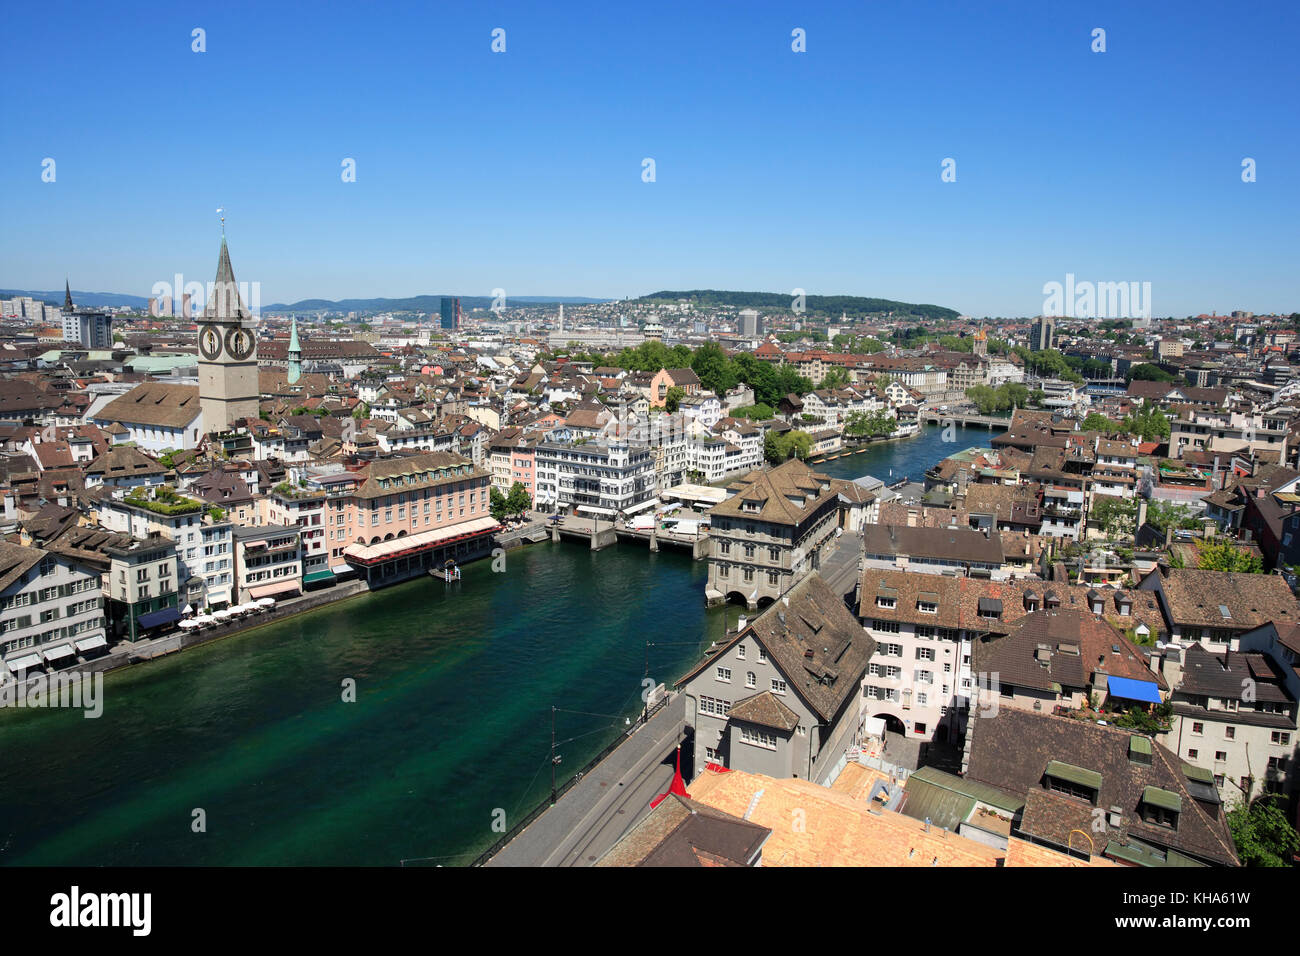 Photo de la ville de Zurich, Suisse. Prises d'un tour de l'église surplombant la rivière Limmat. Banque D'Images